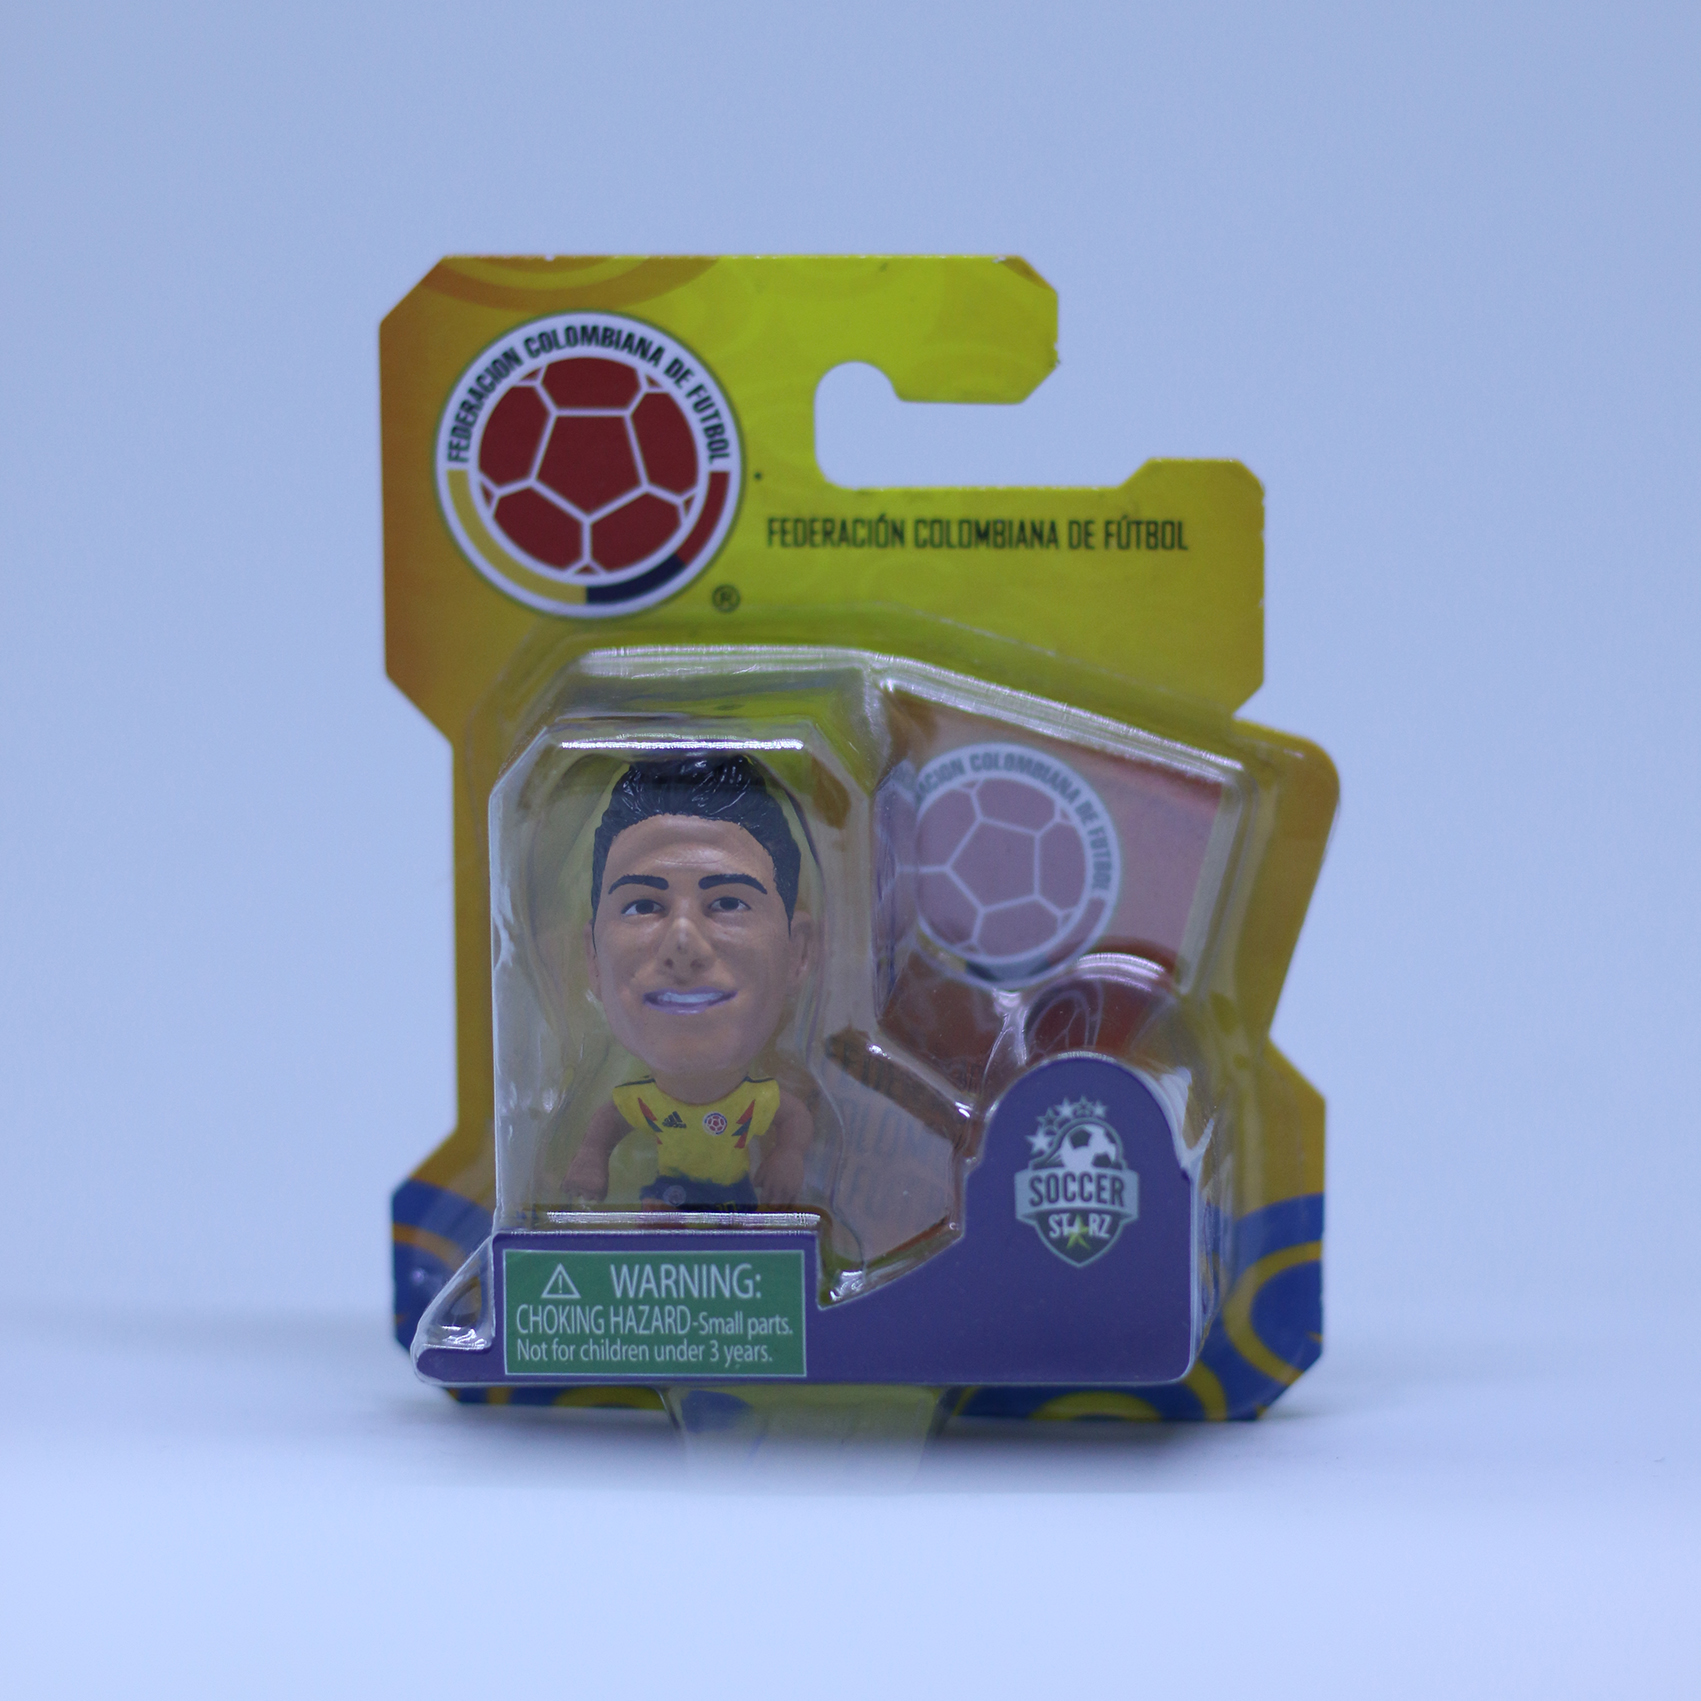 โมเดล นักฟุตบอล James Rodriguez - Home Kit  ลิขสิทธิ์แท้ COLOMBIA